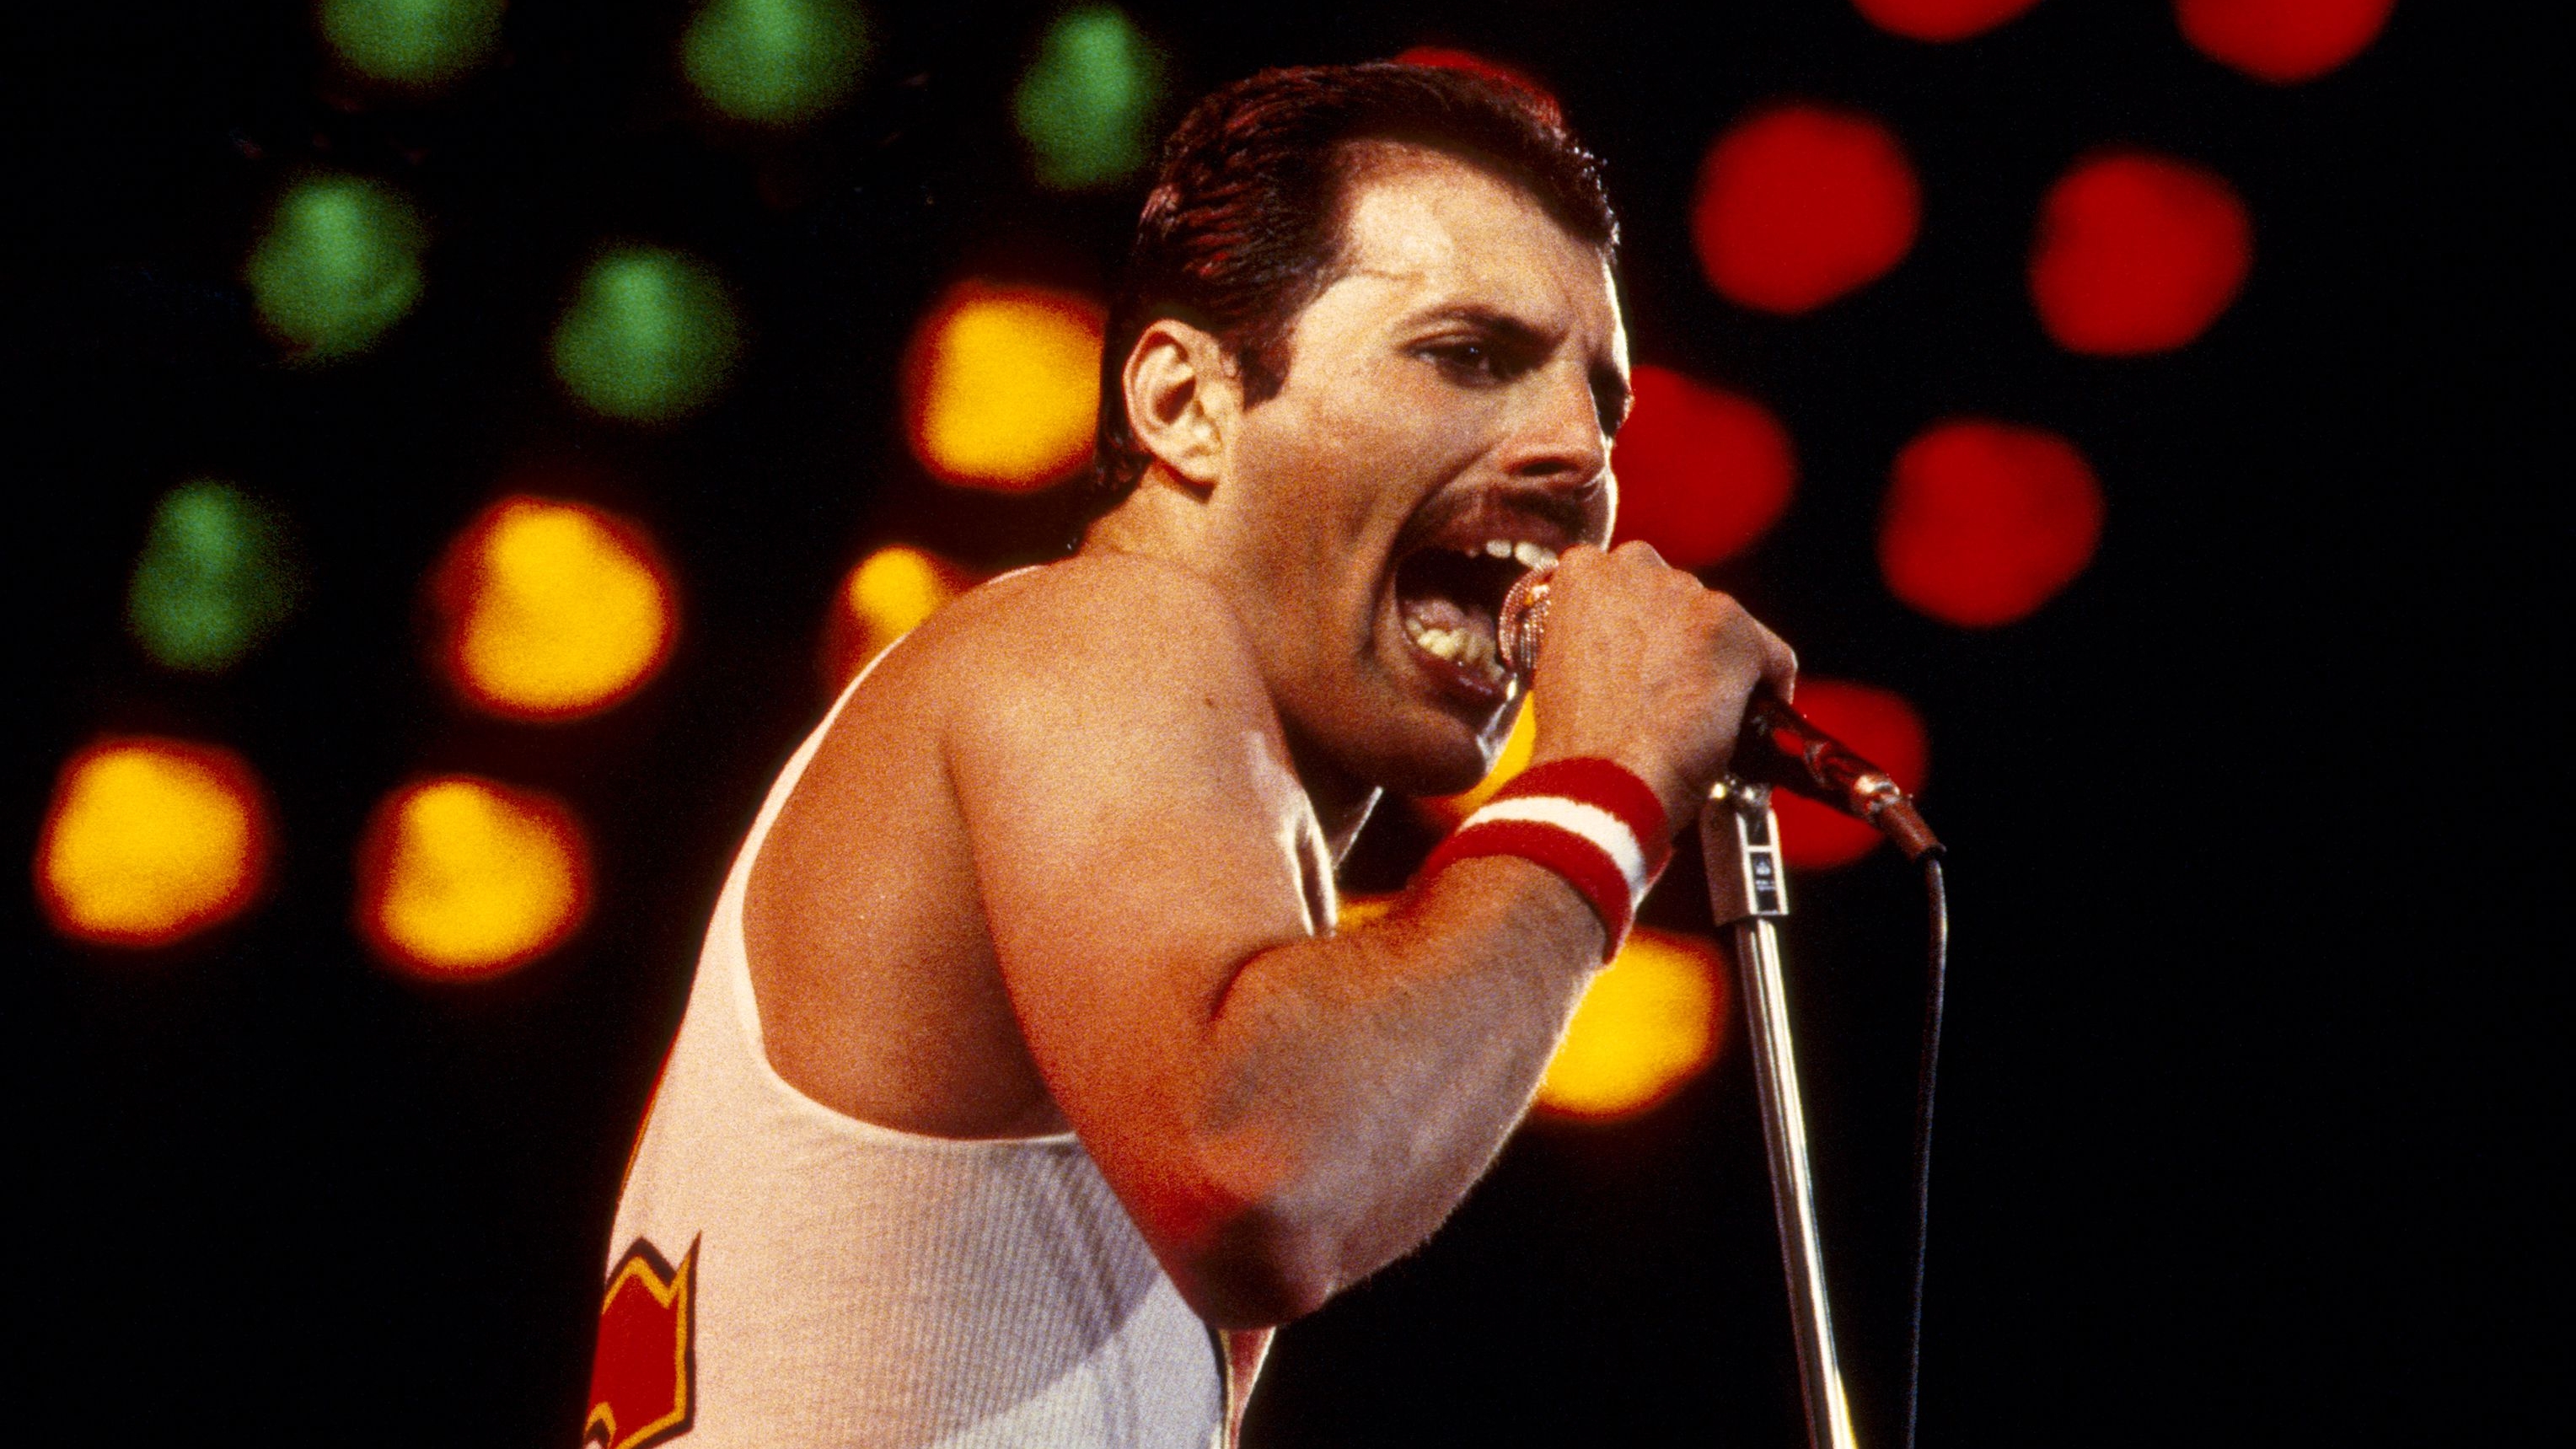 El vocalista de Queen, Freddie Mercury, era un popular bisexual, por lo que decidieron tomarlo como inspiración (Foto: Graham Wiltshire/Shutterstock)